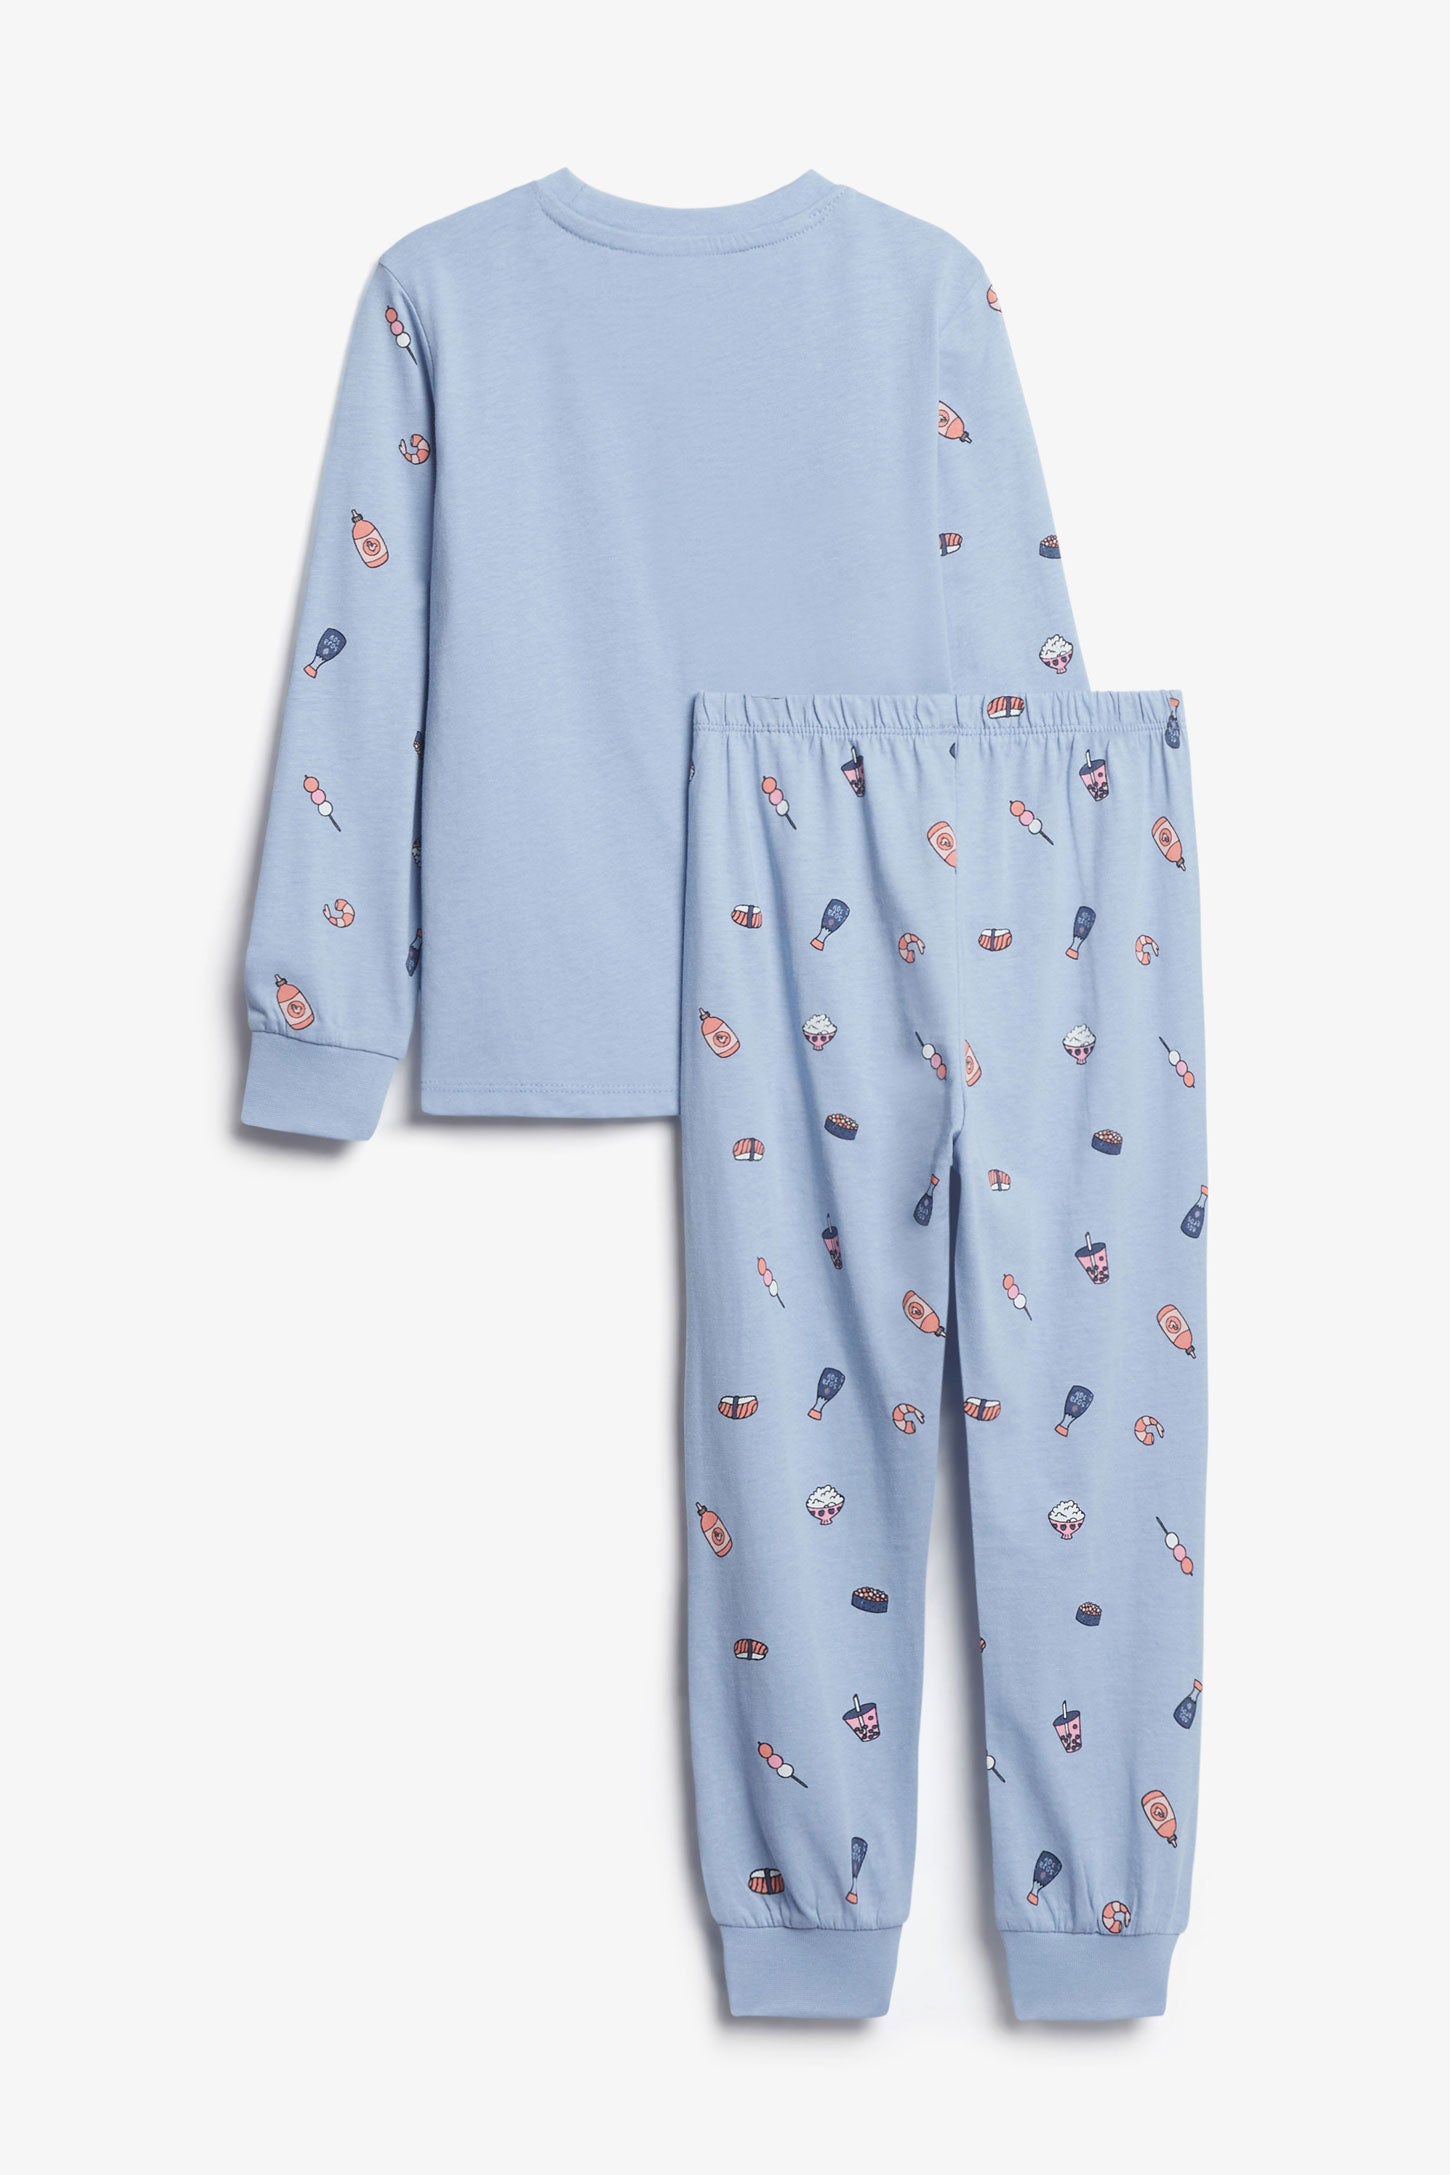 Duos futés, Pyjama 2-pièces en coton, 2/35$ - Enfant fille && BLEU